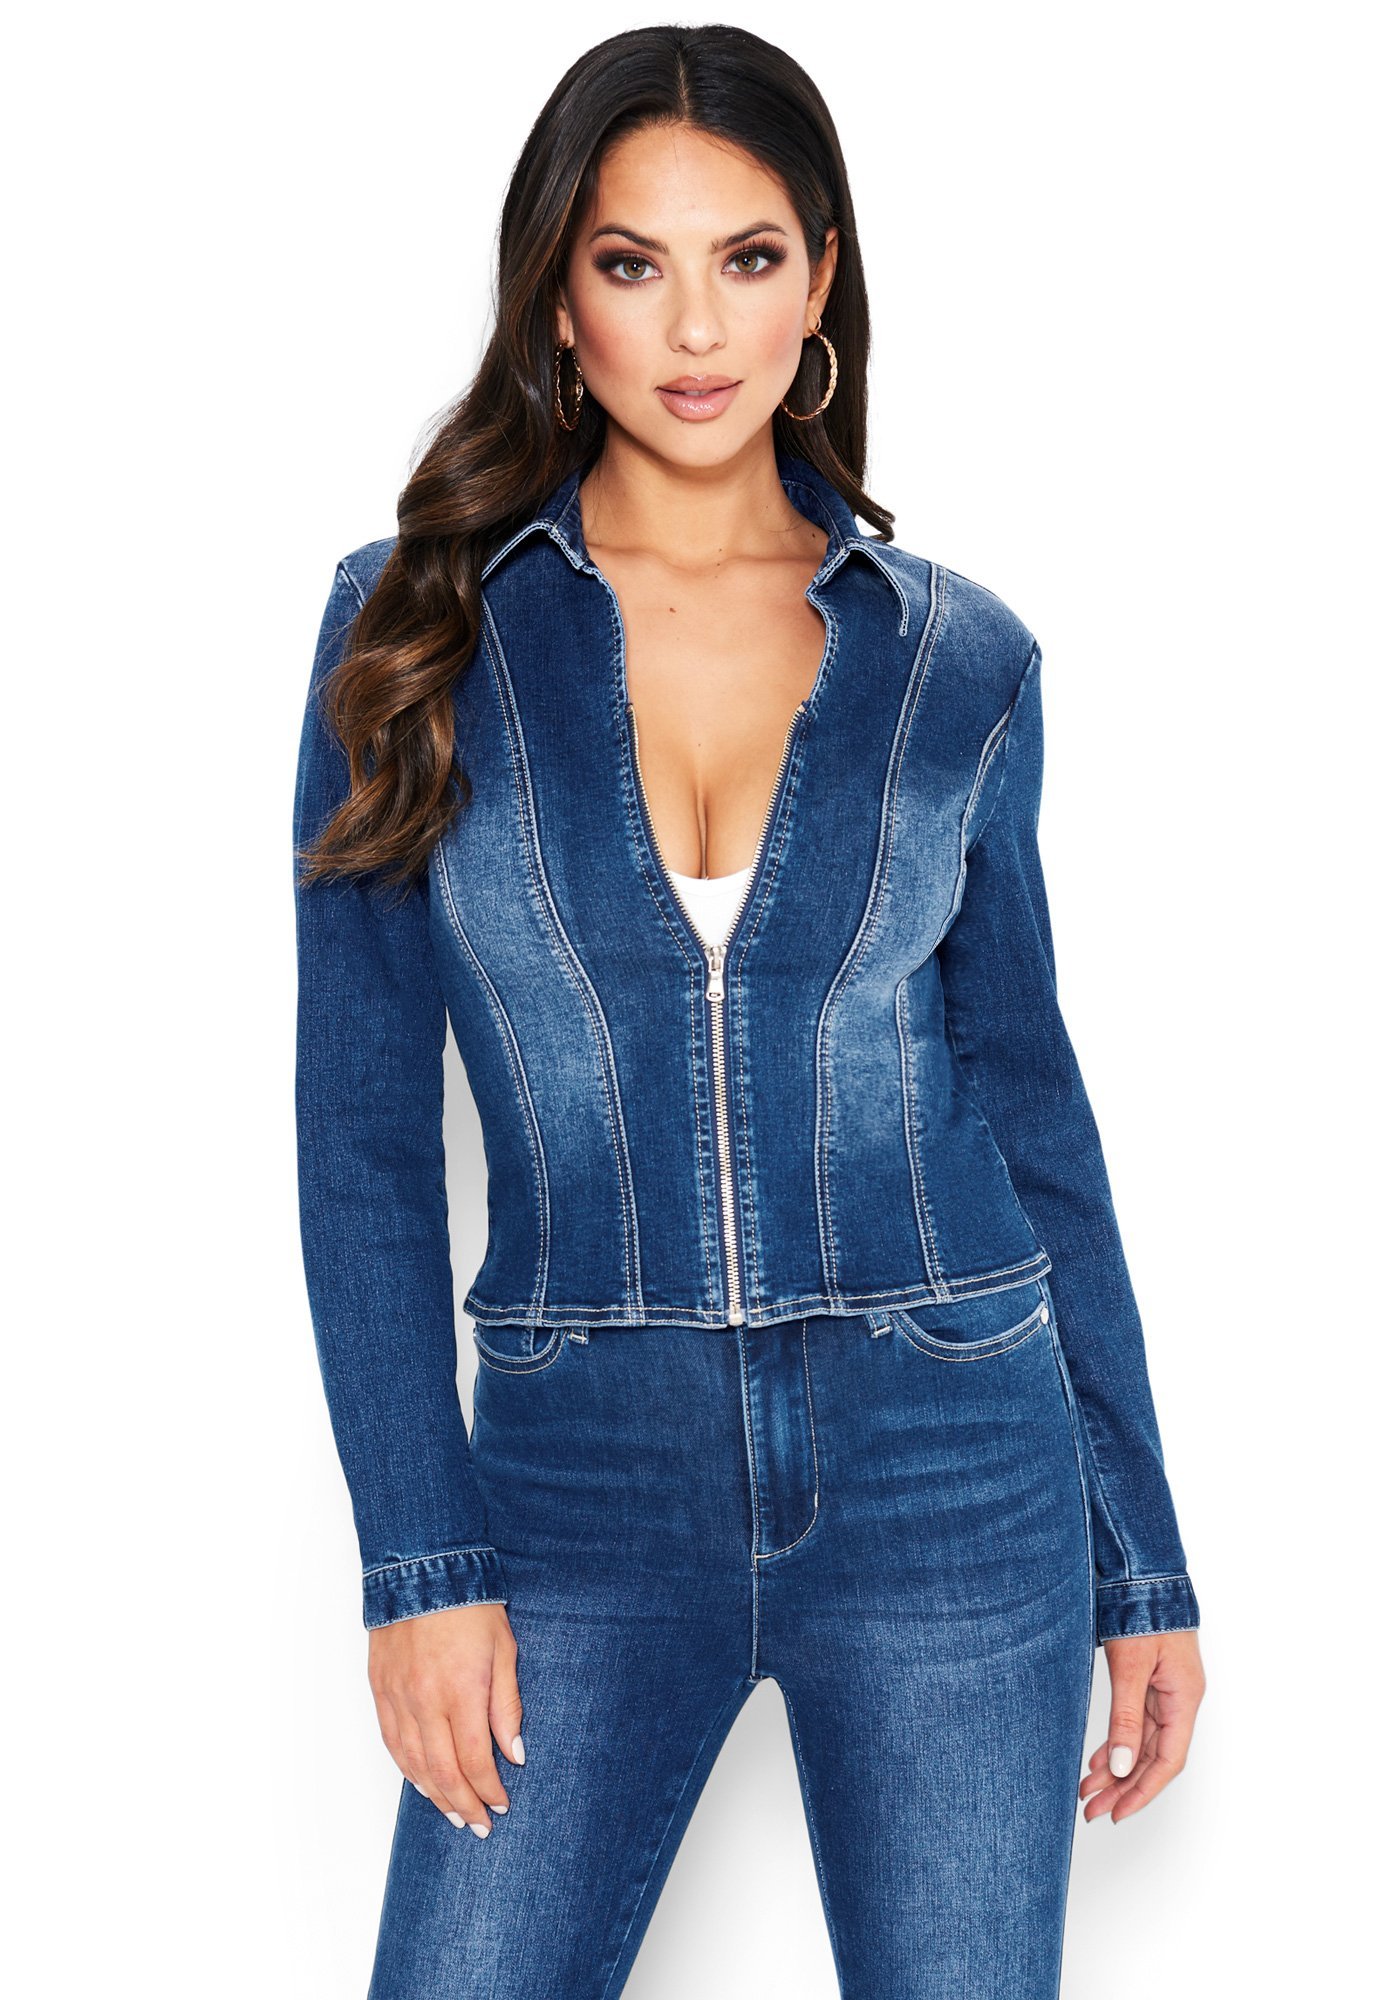 Bebe Women's Deep V Zip Up Denim Jacket, Size XL in MEDIUM INDIGO WASH Cotton/Spandex